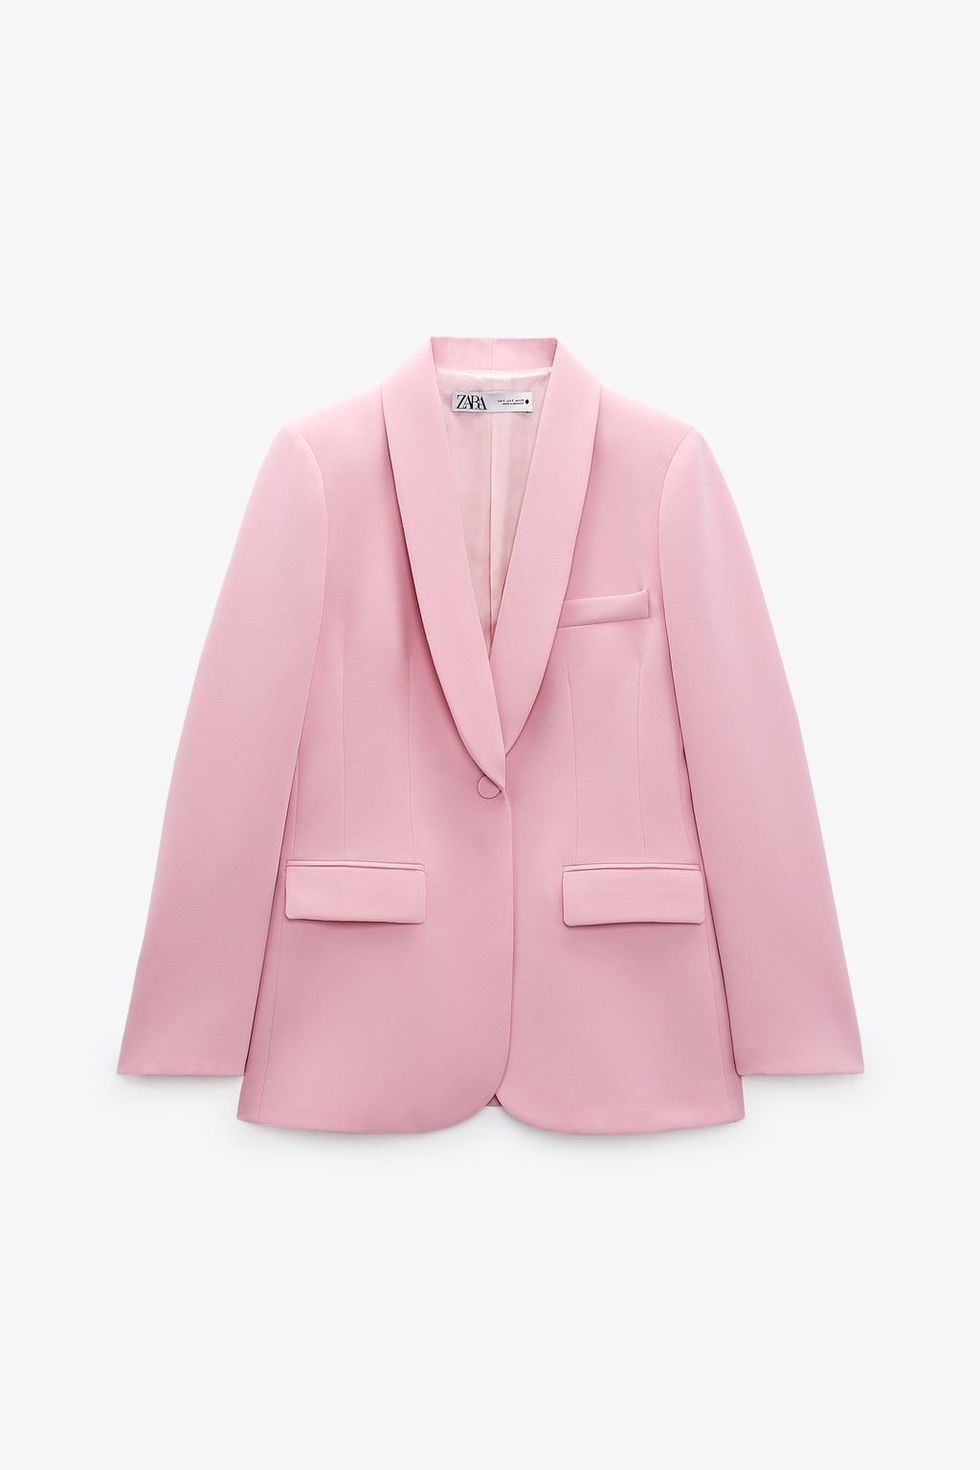 Victoria de Suecia estrena el traje rosa de Zara más bonito (y asequible)